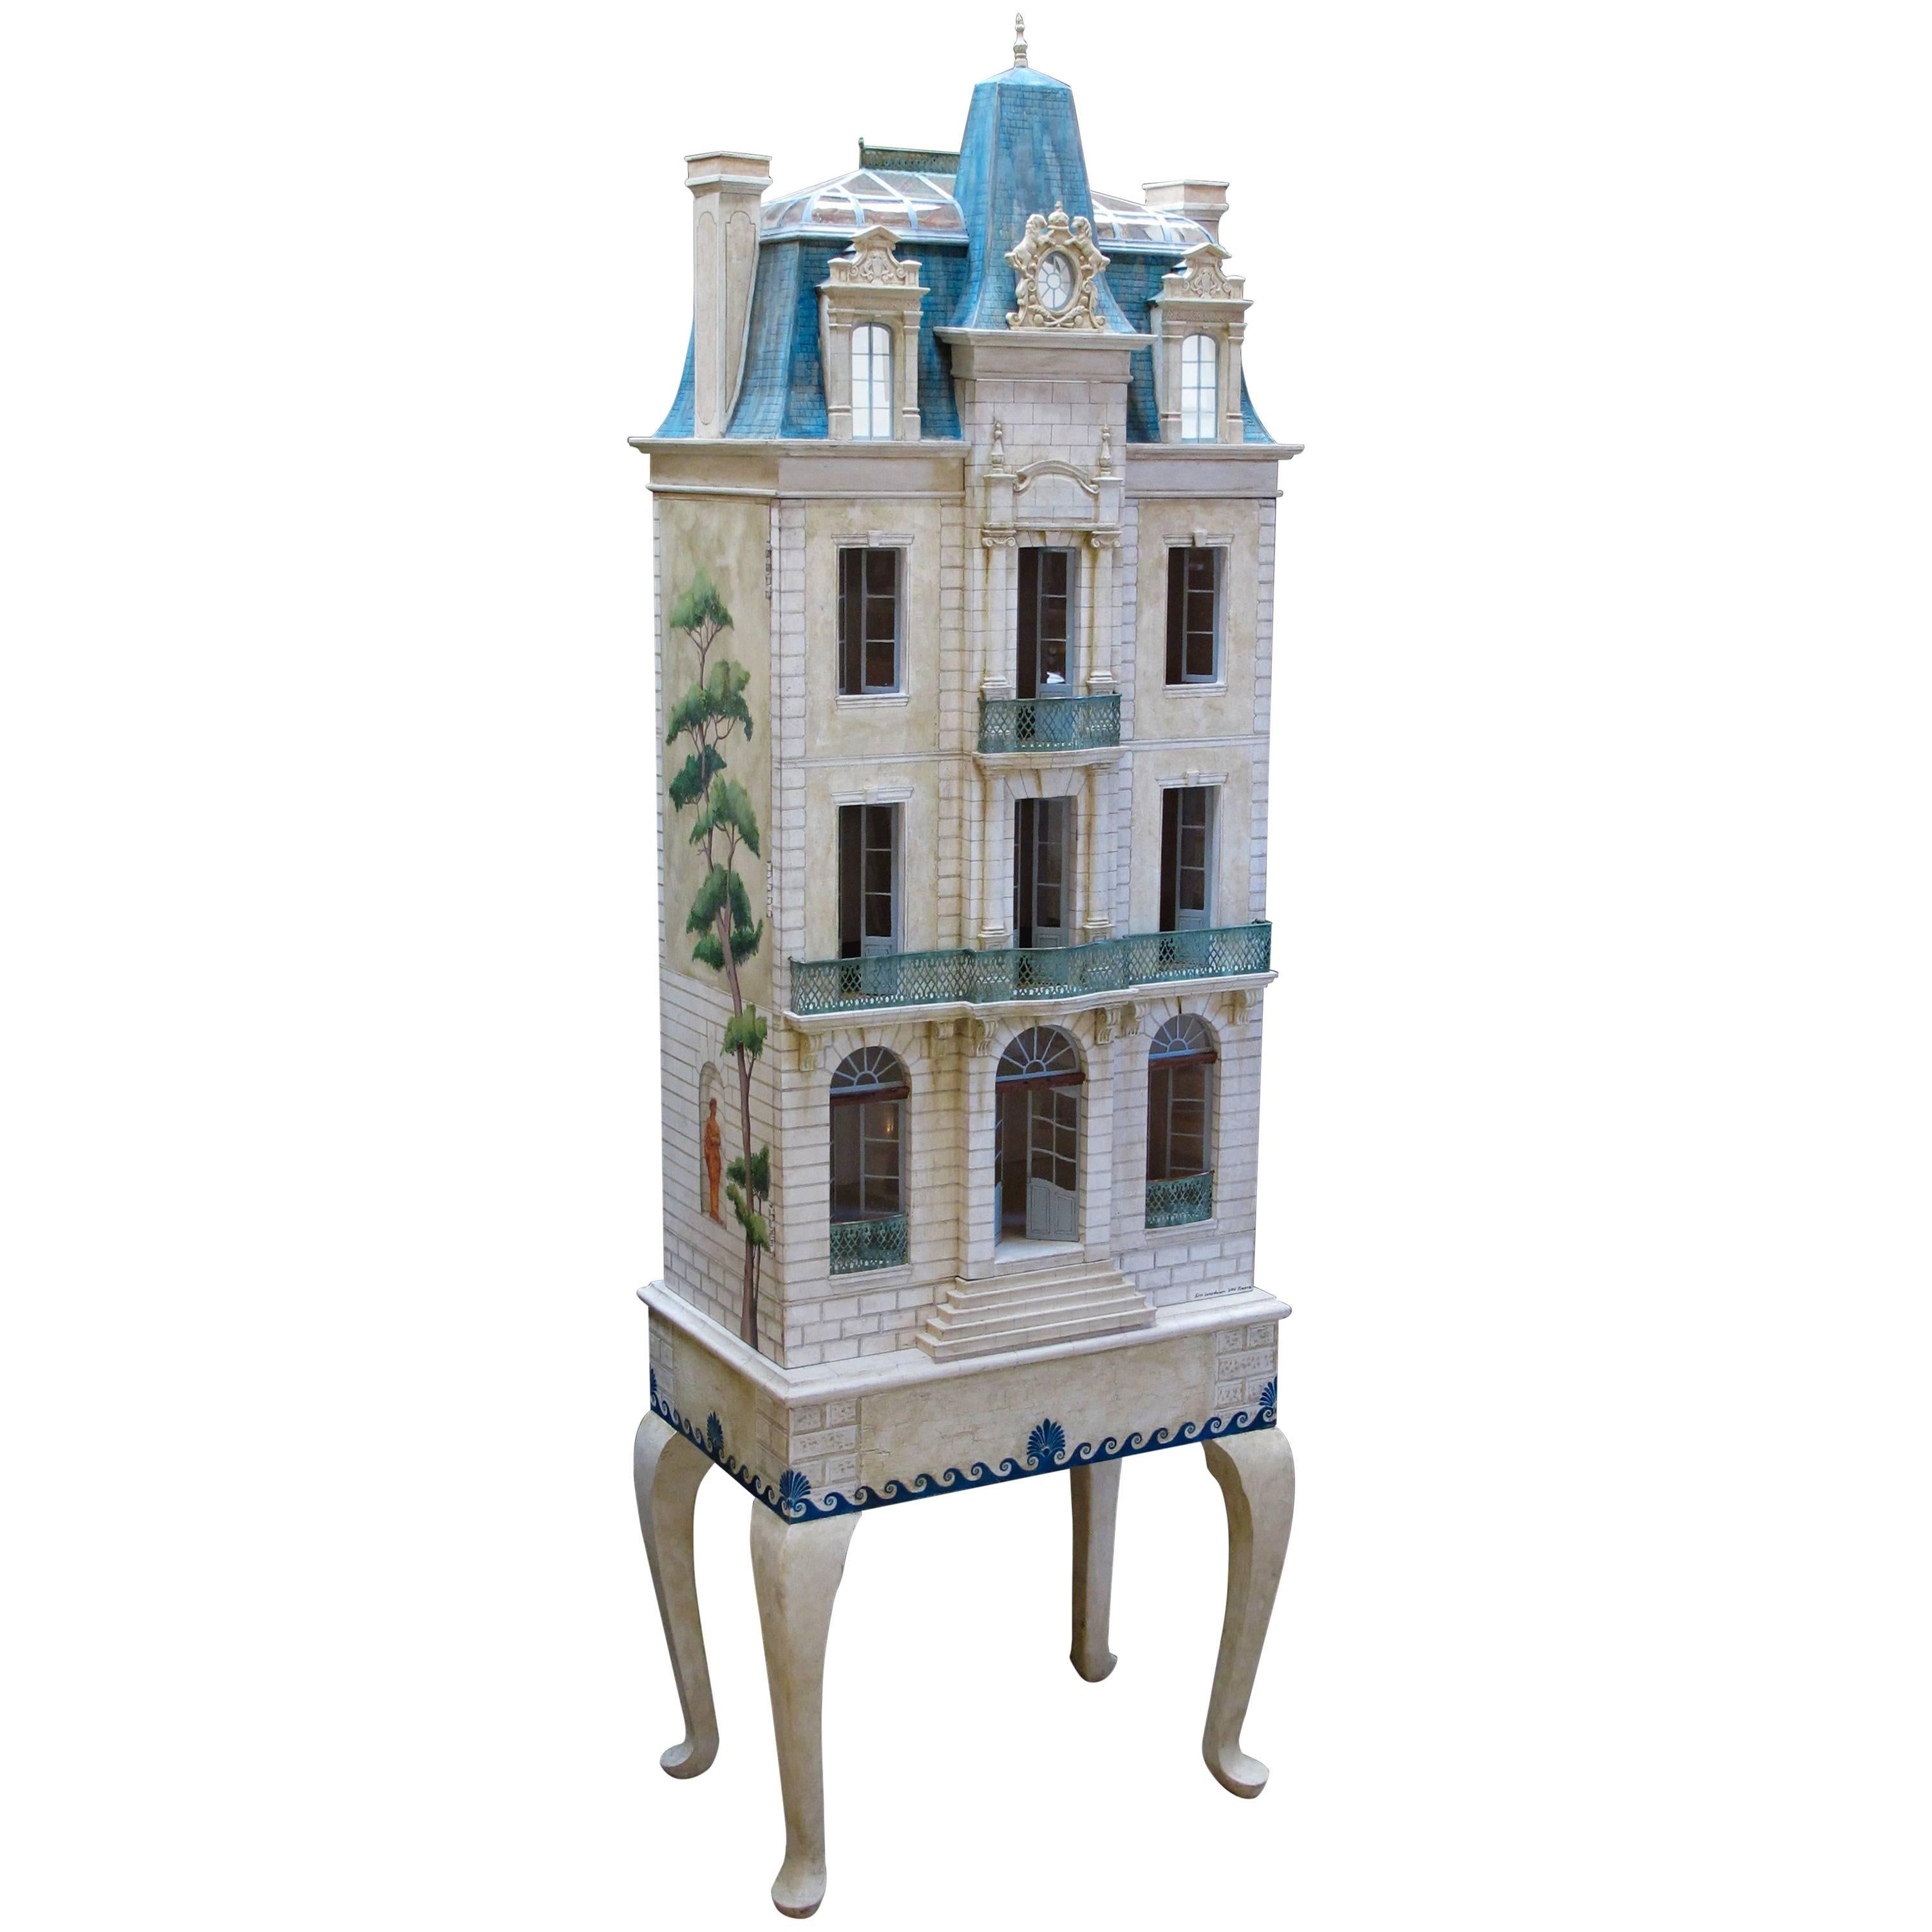 Seltenes und meisterhaft gefertigtes handbemaltes Puppenhaus von Eric und Carole Lansdown